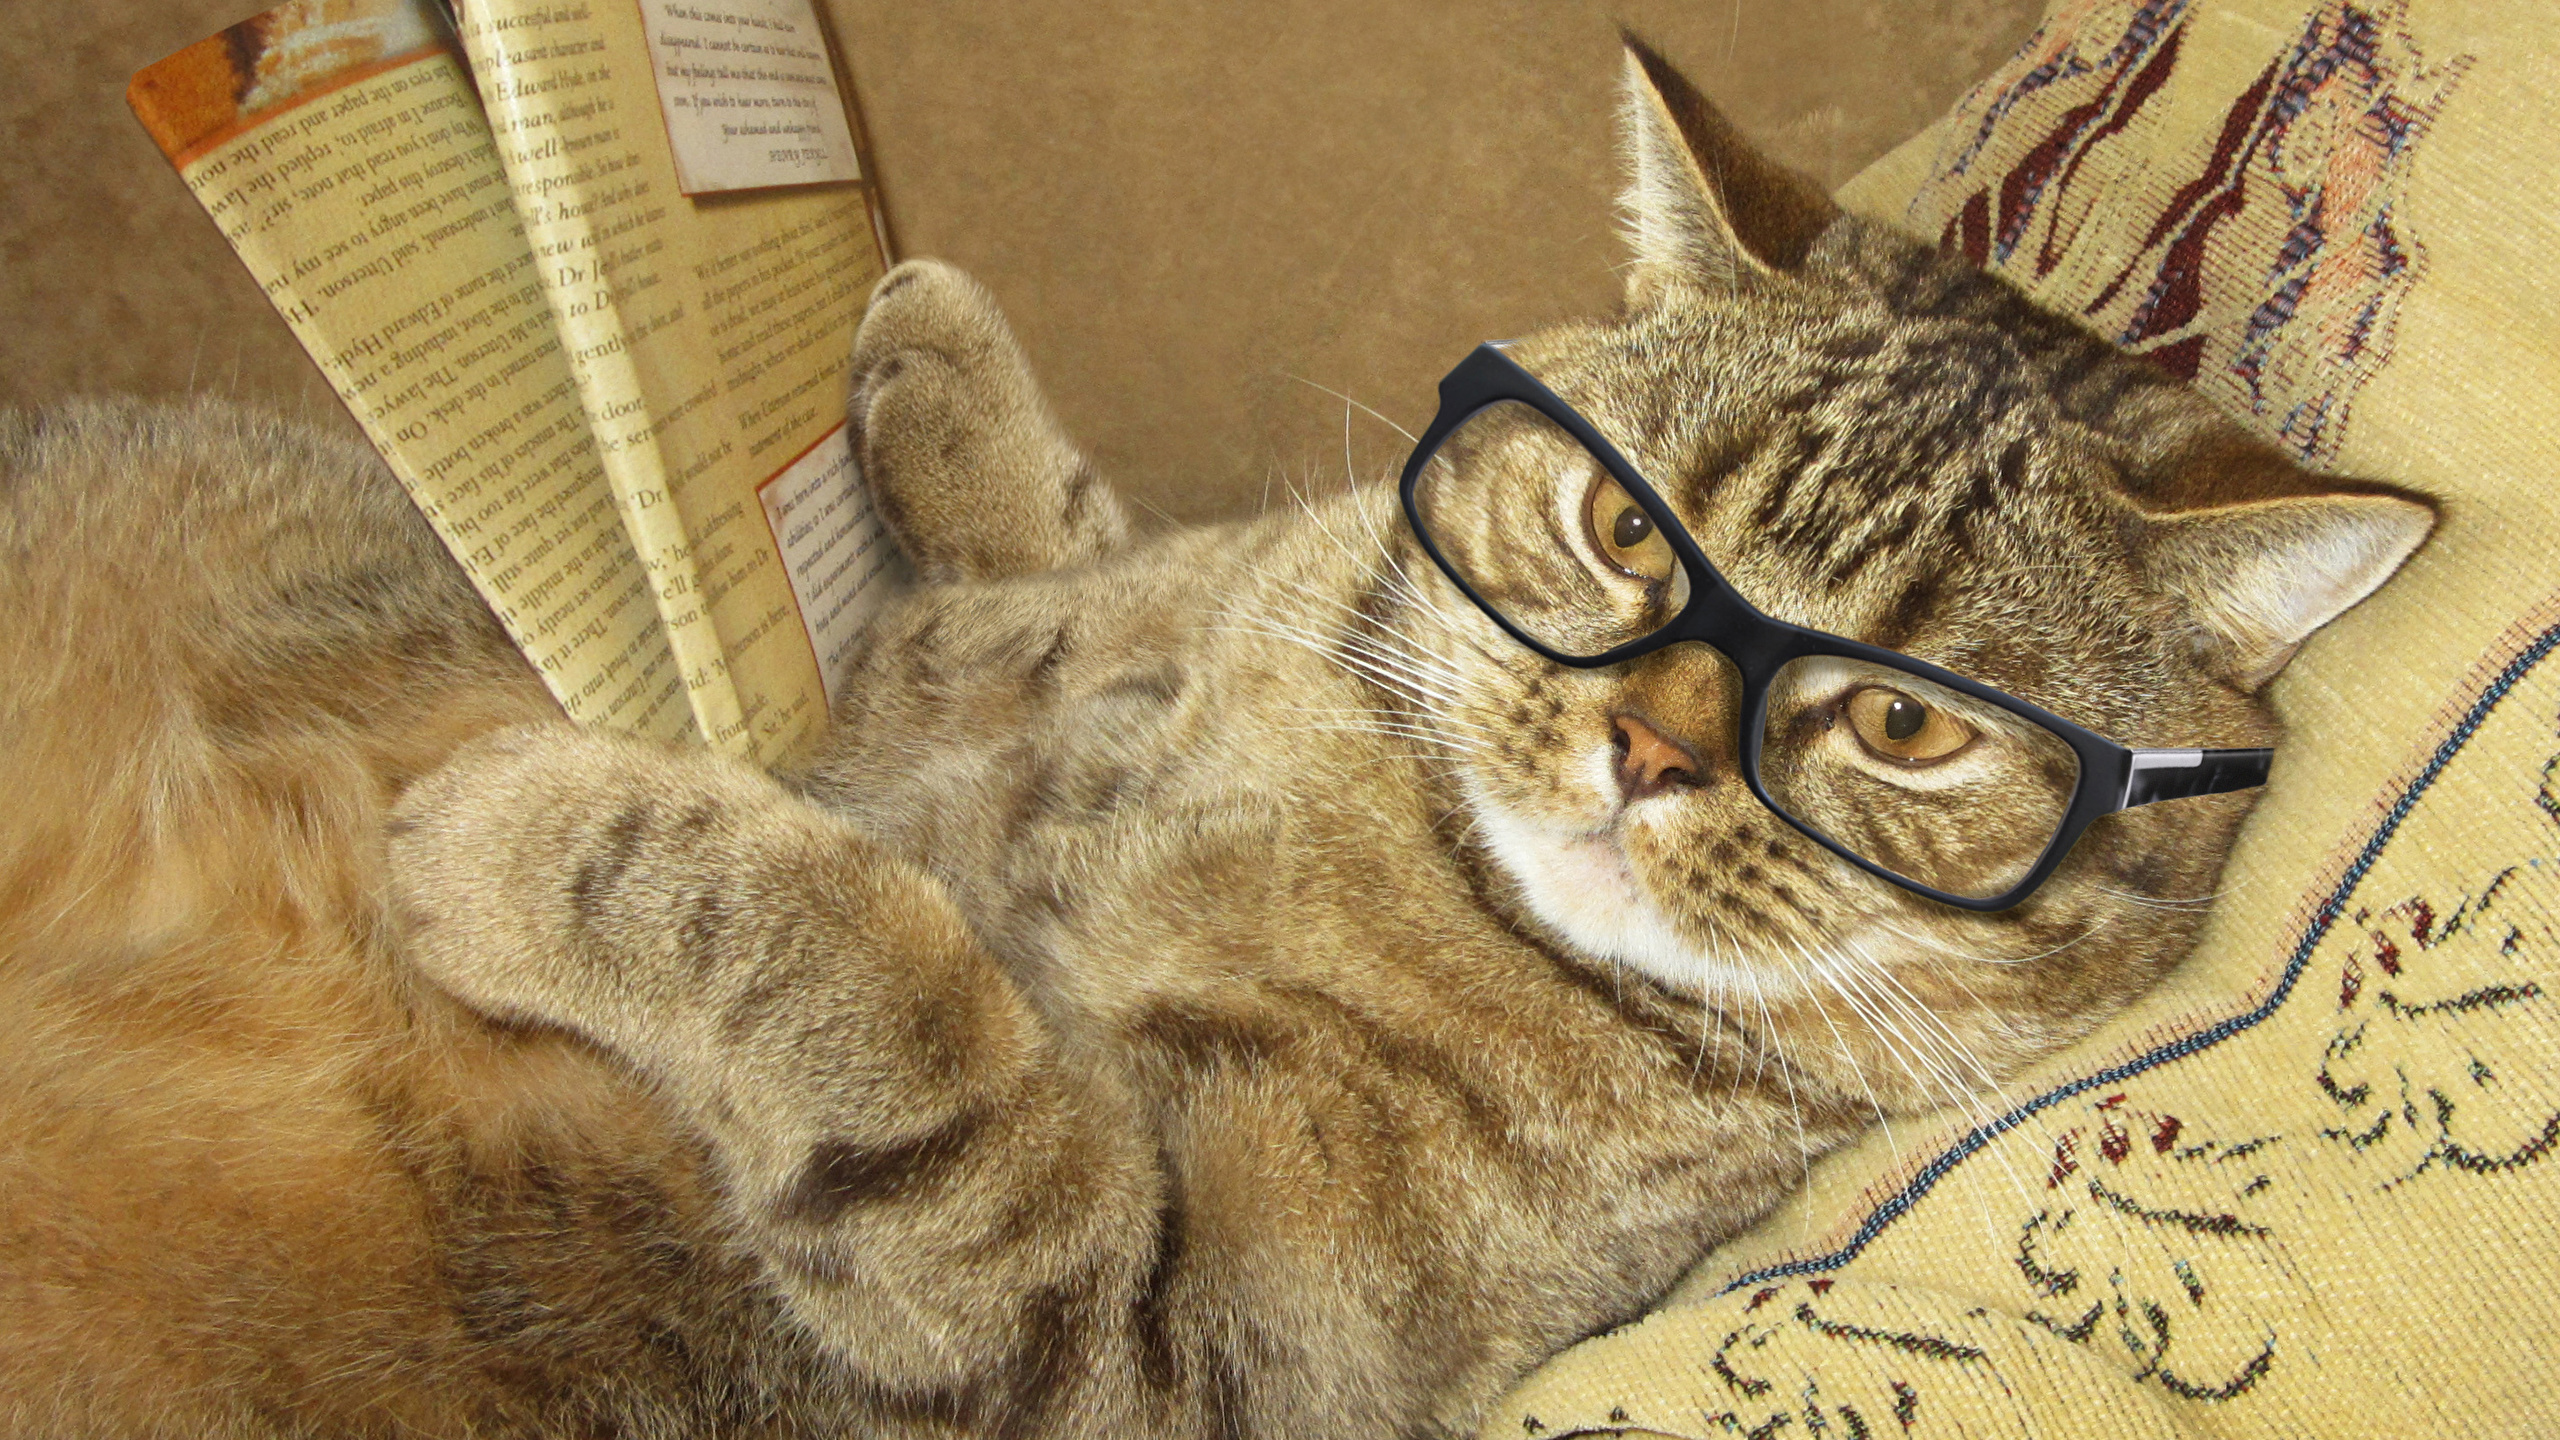 壁紙 2560x1440 クリエイティブ 飼い猫 眼鏡 雑誌 肉球 凝視 おもしろい 動物 ダウンロード 写真